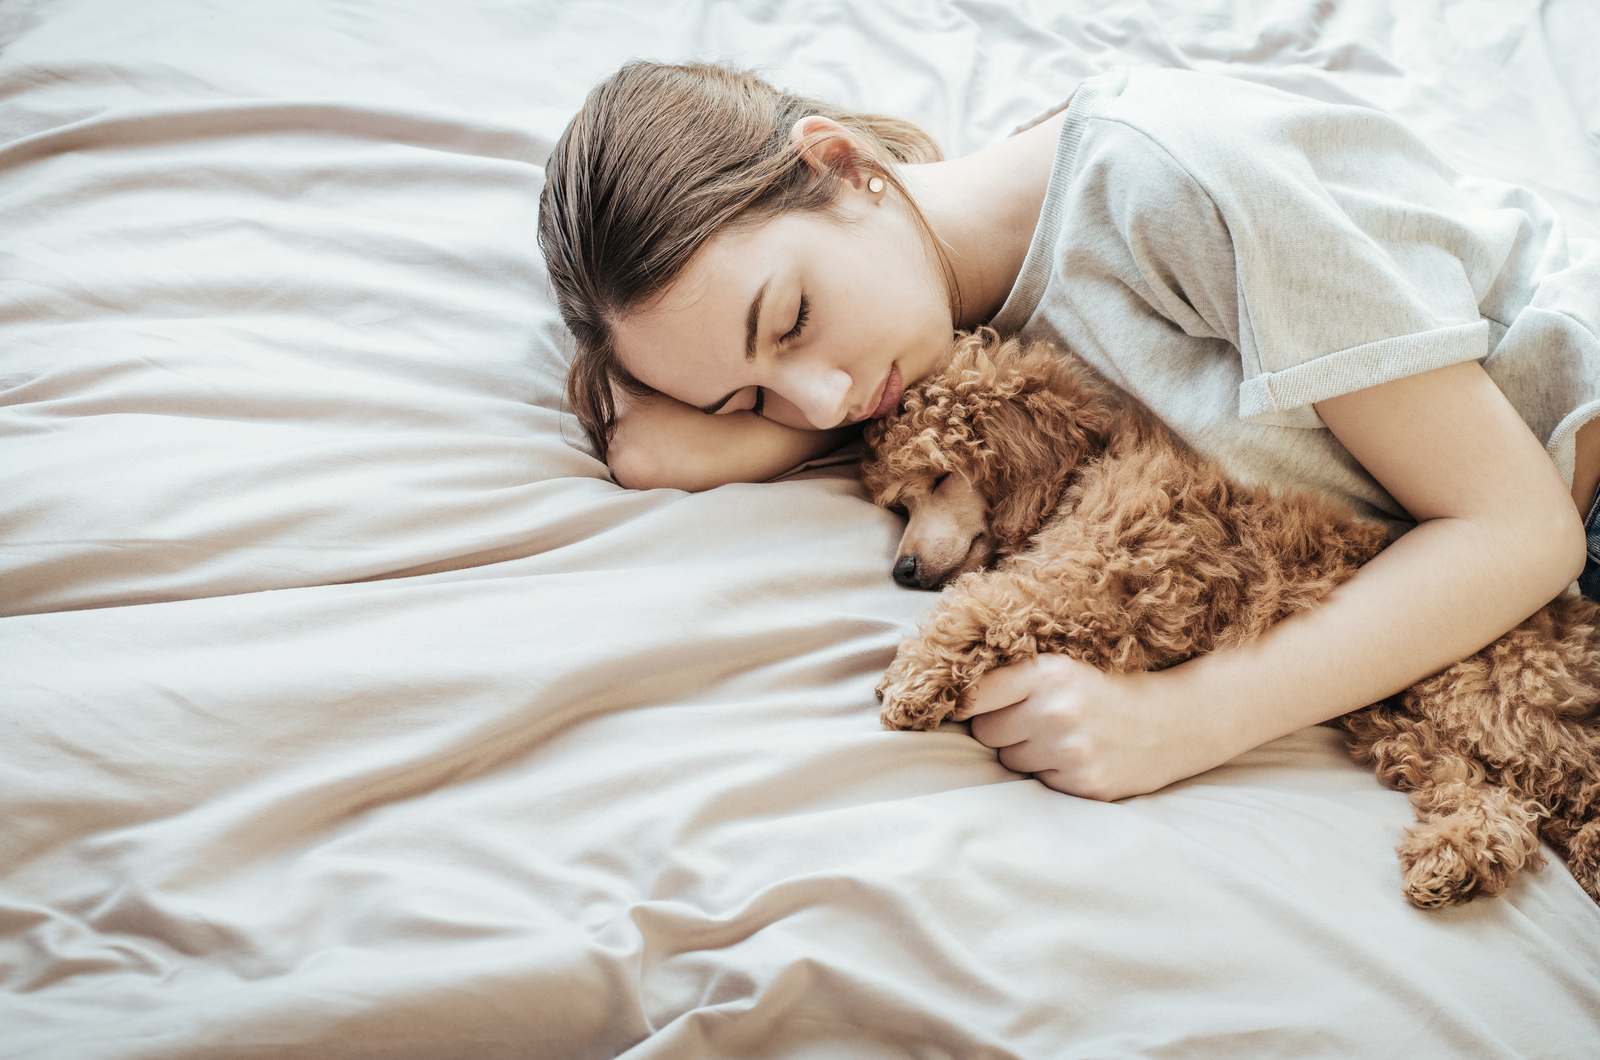 Frau liegt mit Hund im Bett